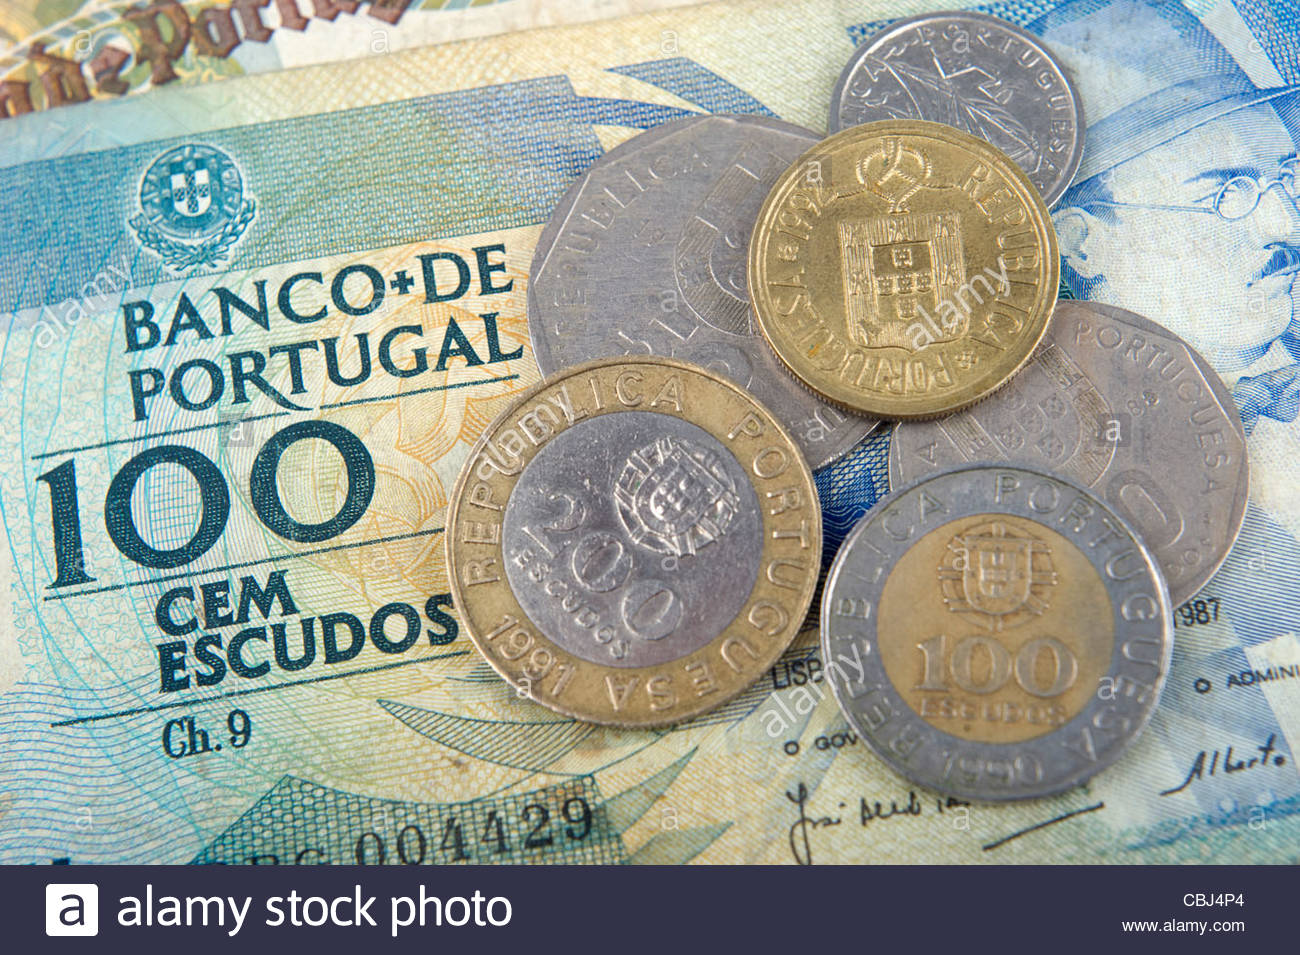 portuguese-escudo-bills-and-coins-CBJ4P4.jpg